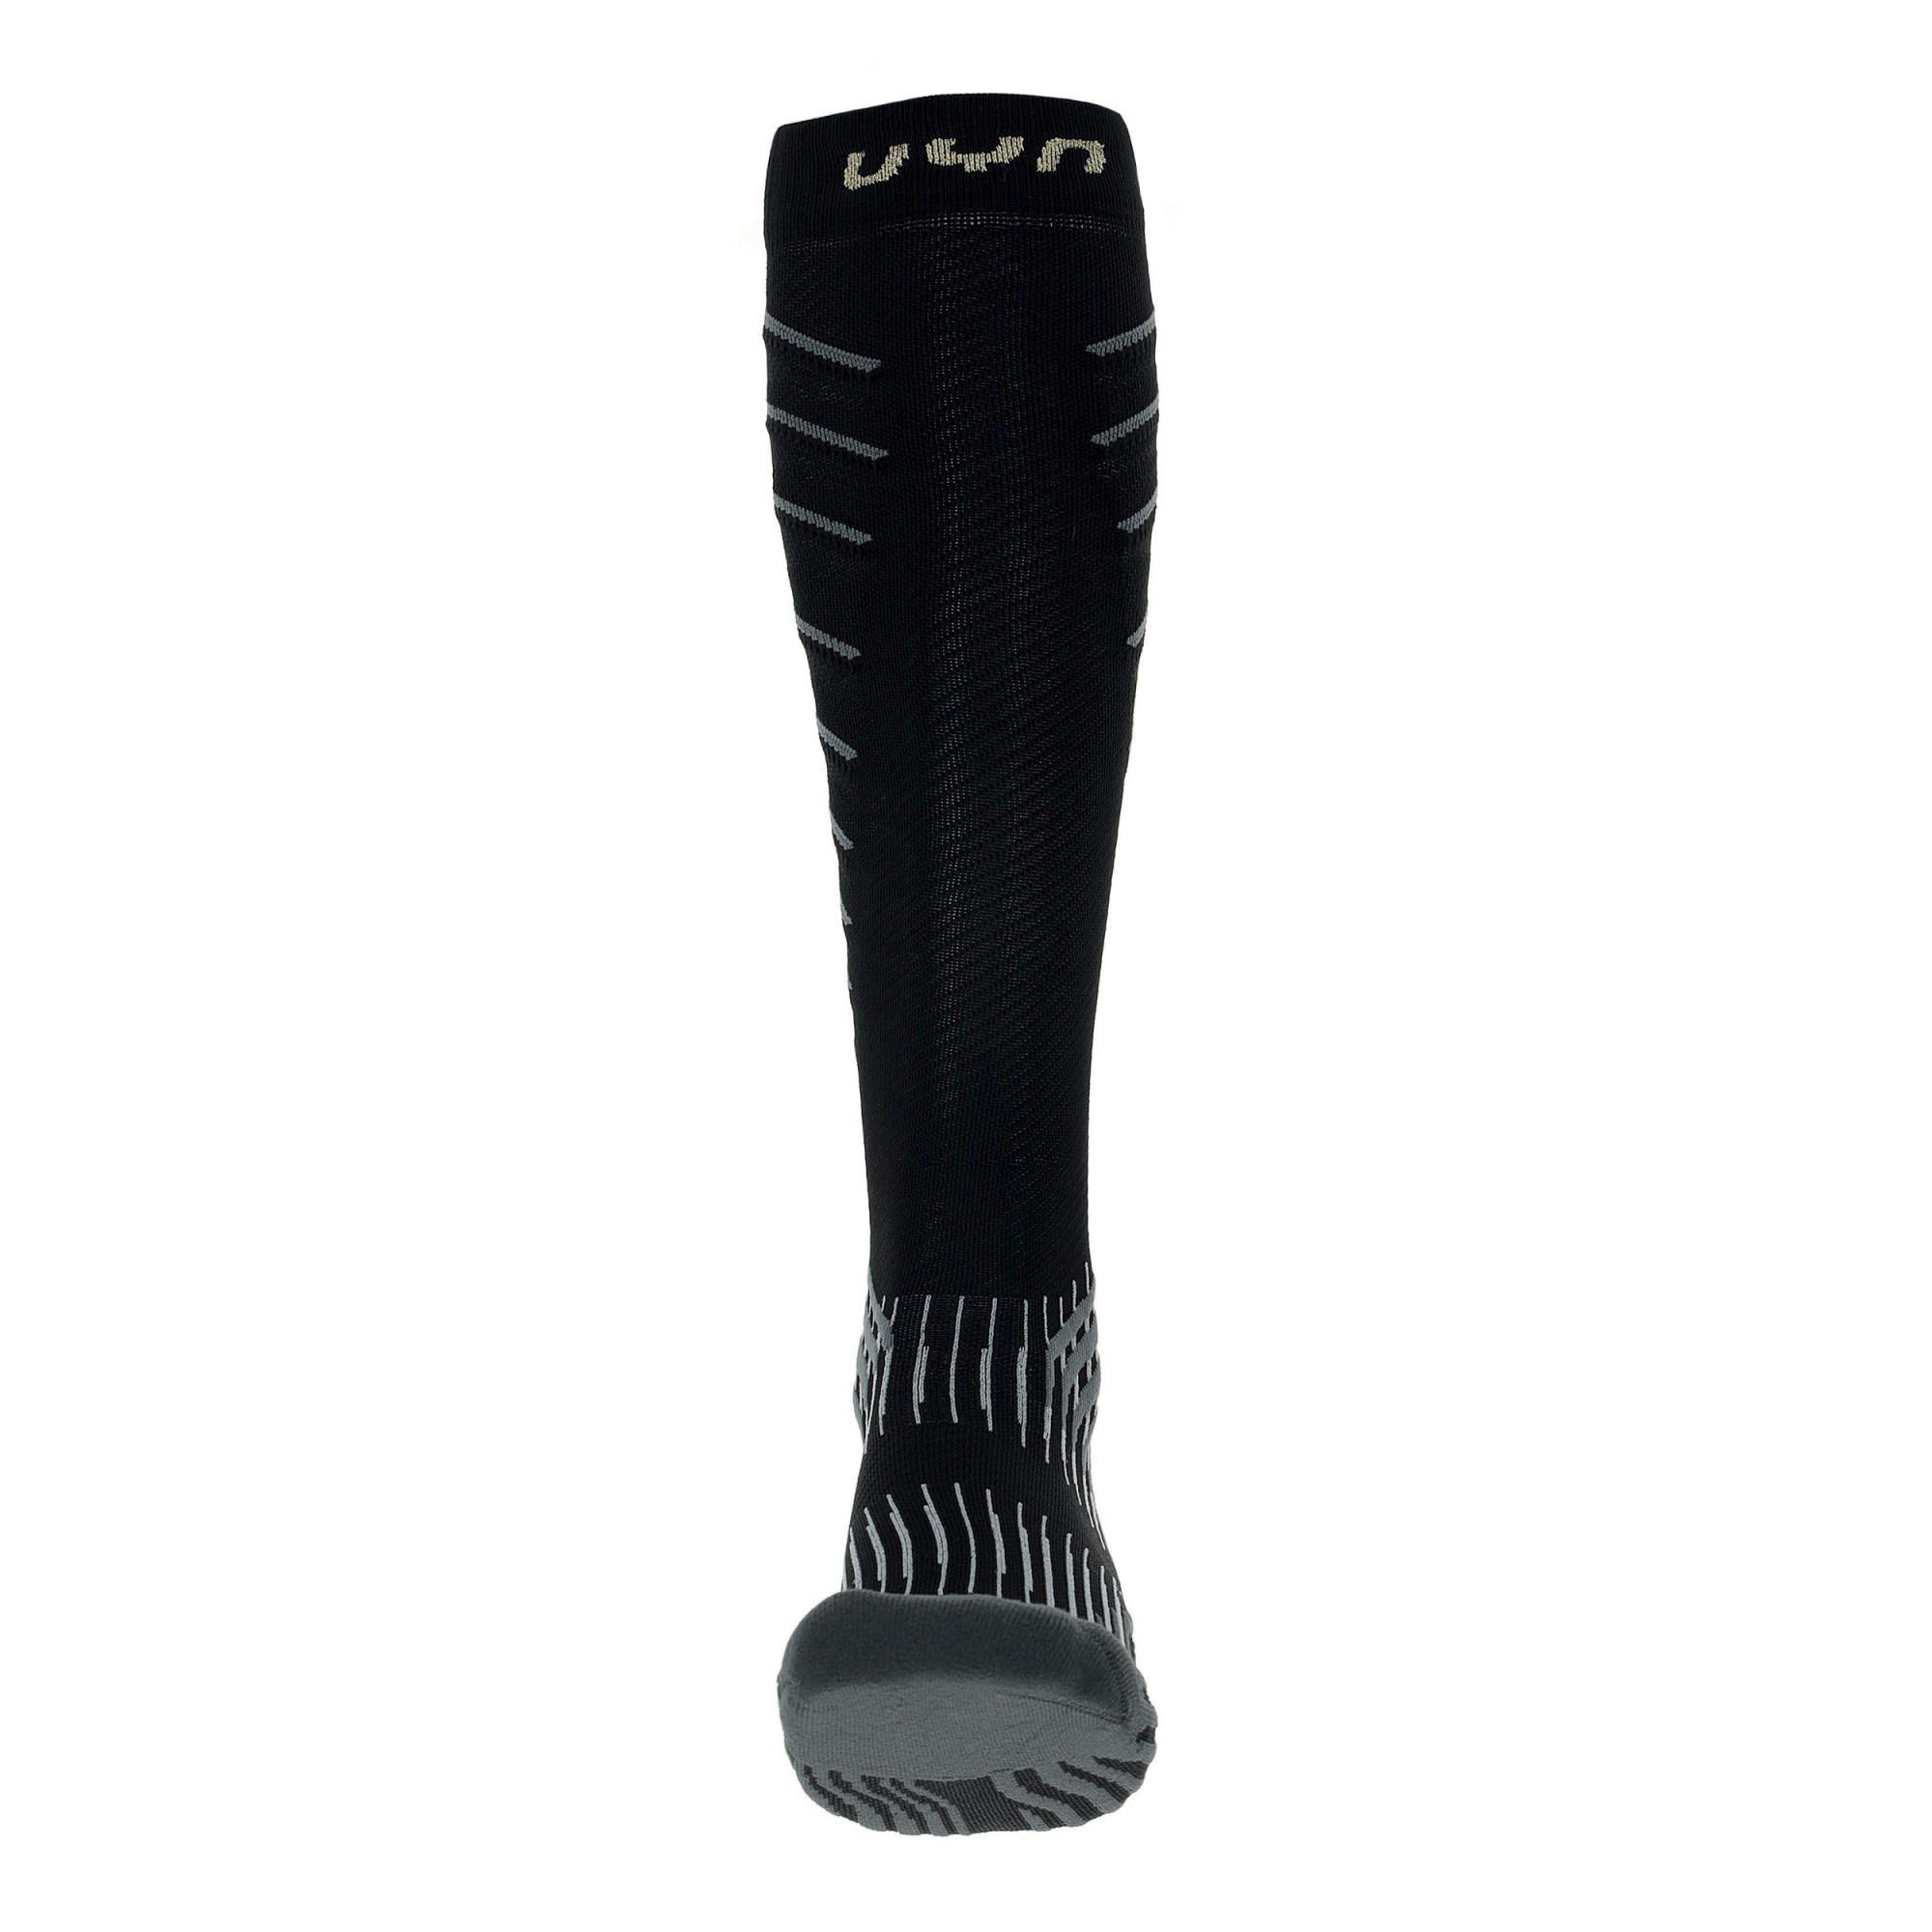 Damen Thermosocken Uyn Run - W Onepiece Socks Black UYN Grey 0.0 Compression